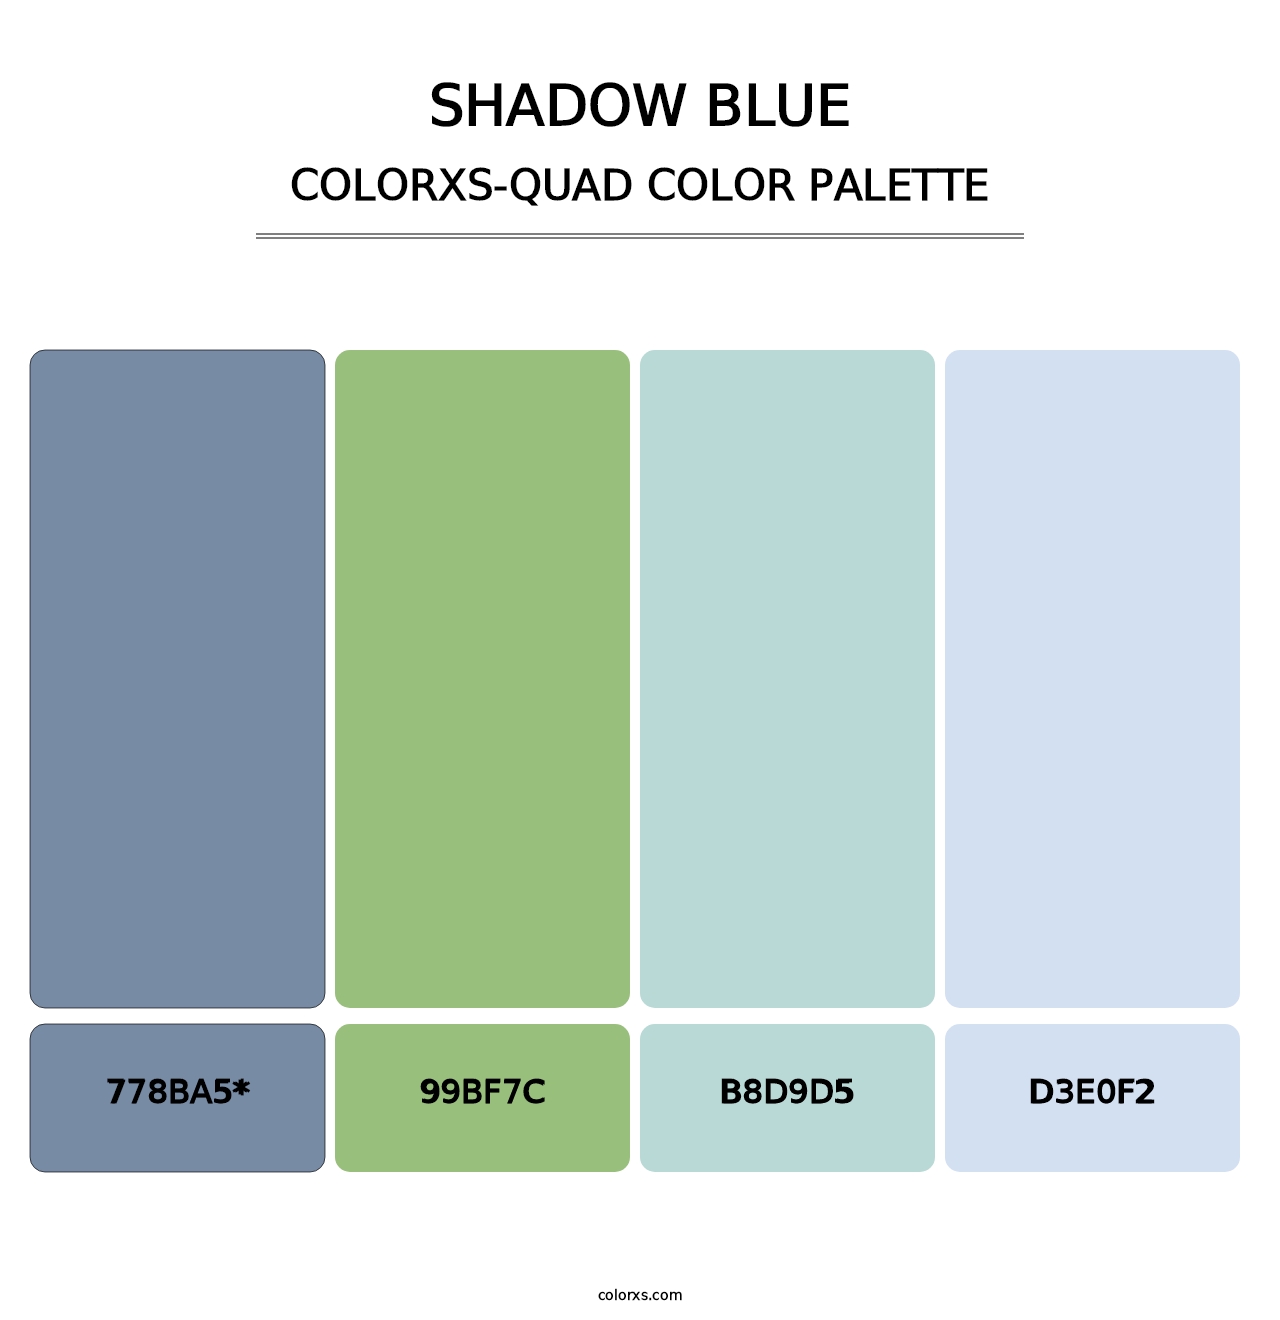 Shadow Blue - Colorxs Quad Palette